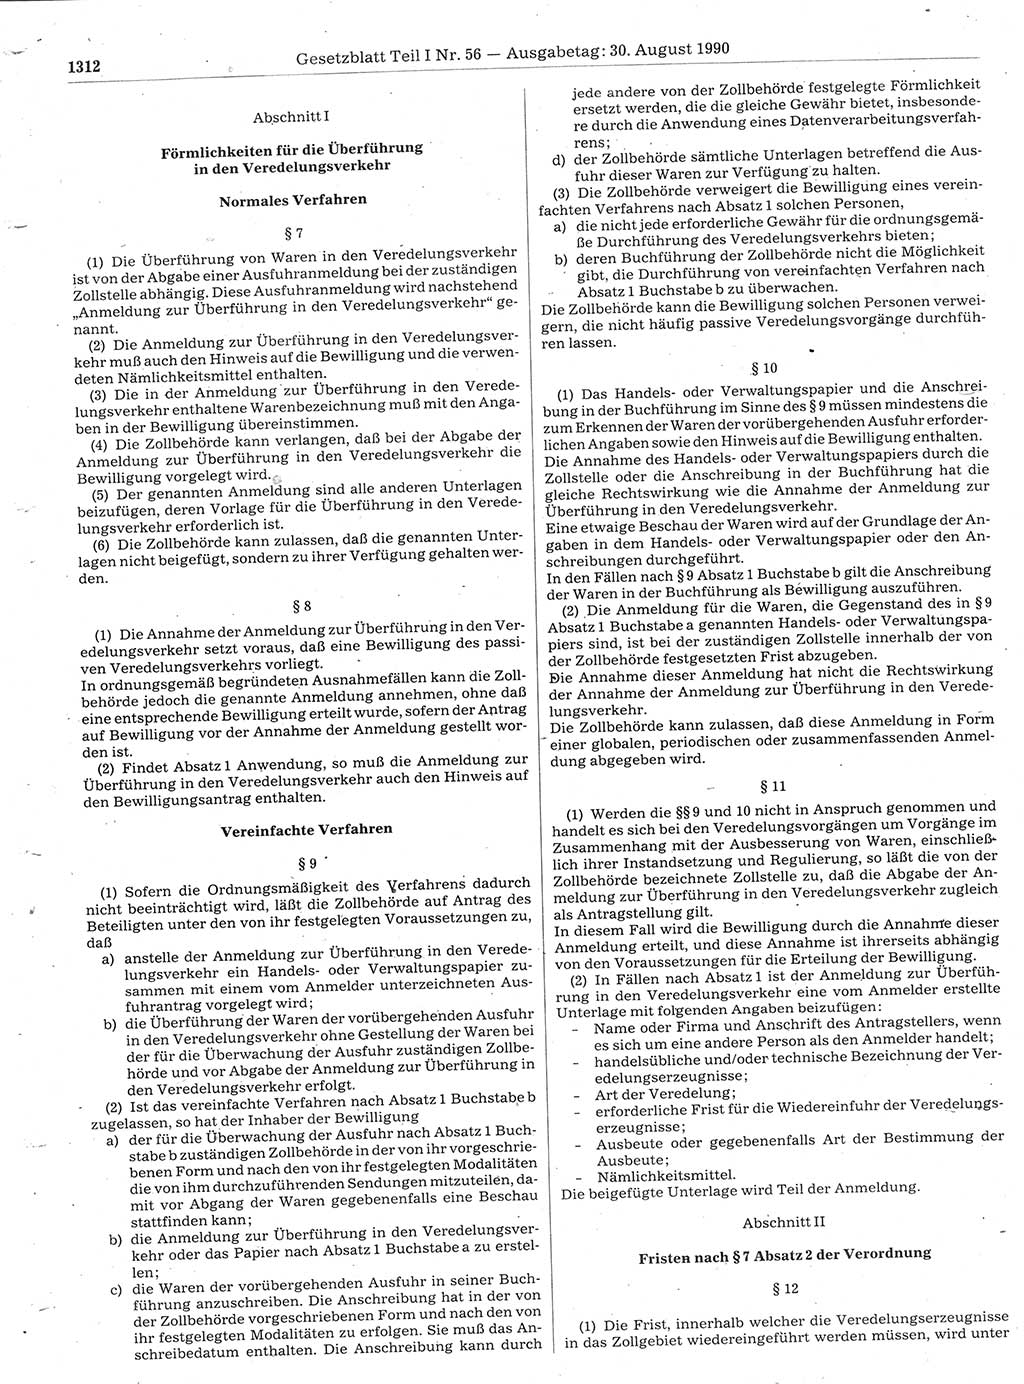 Gesetzblatt (GBl.) der Deutschen Demokratischen Republik (DDR) Teil Ⅰ 1990, Seite 1312 (GBl. DDR Ⅰ 1990, S. 1312)